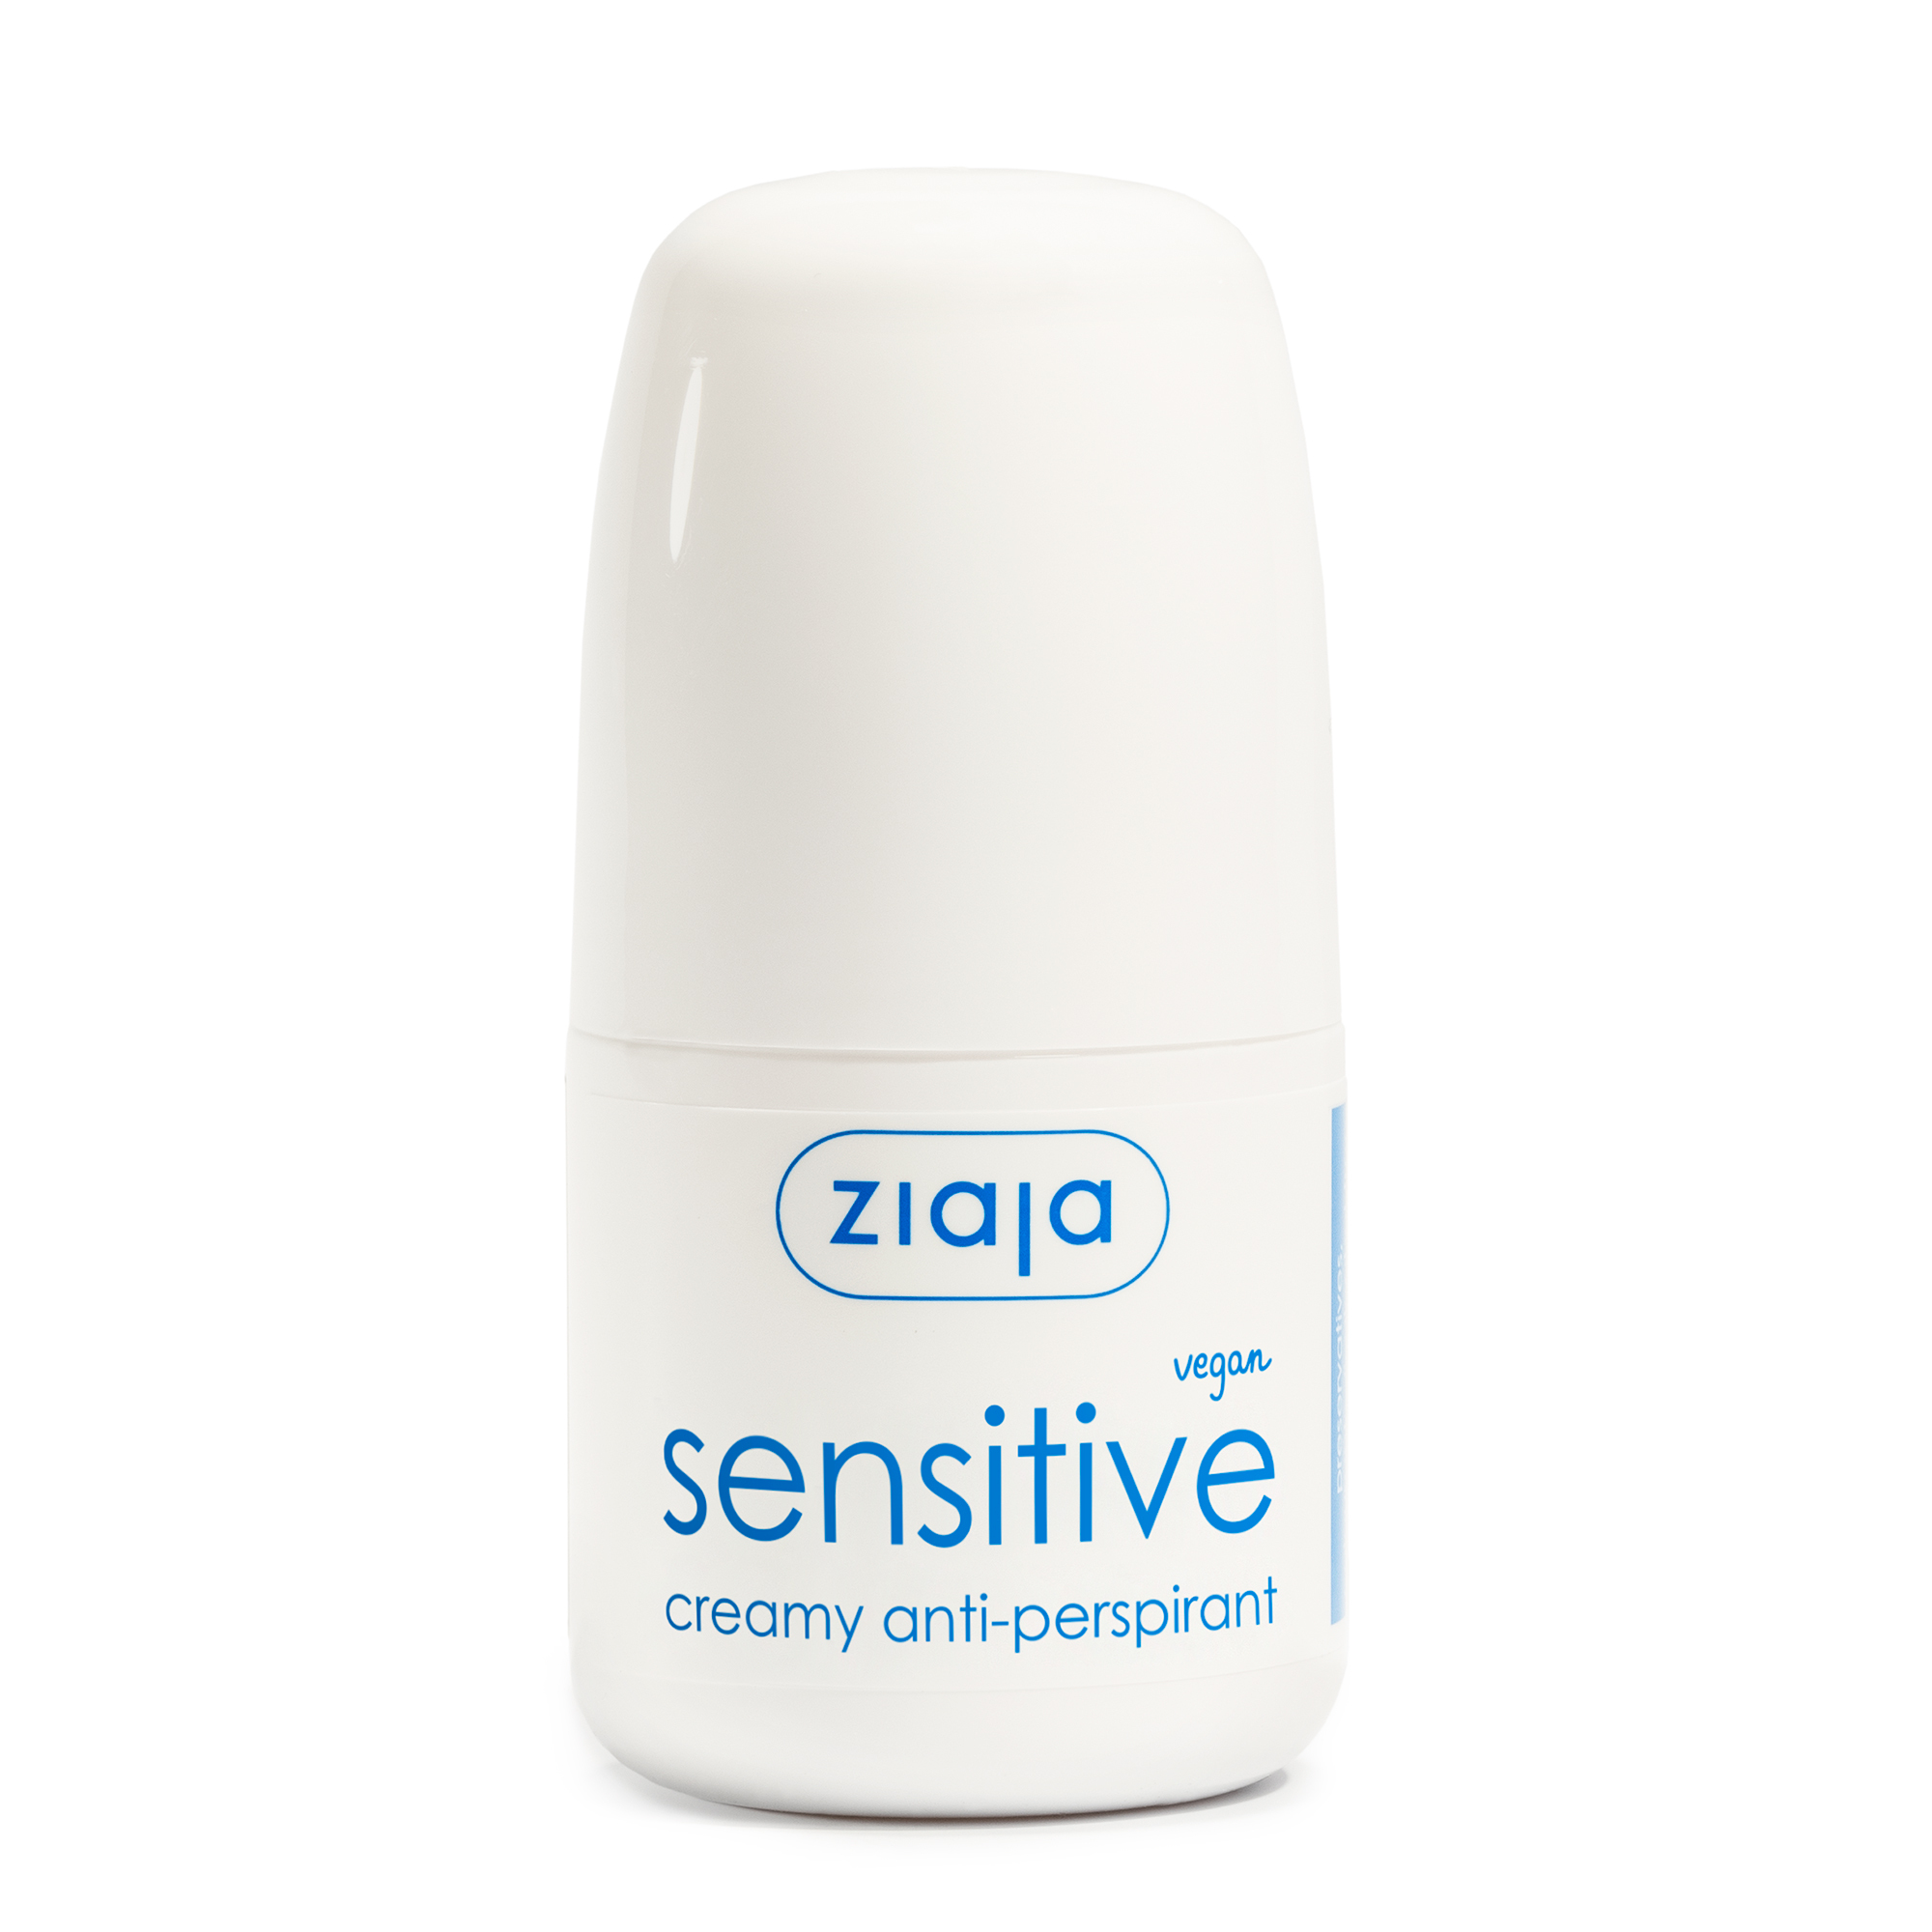 Ziaja Krémový kuličkový antiperspirant Sensitive (Creamy Anti-perspirant) 60 ml